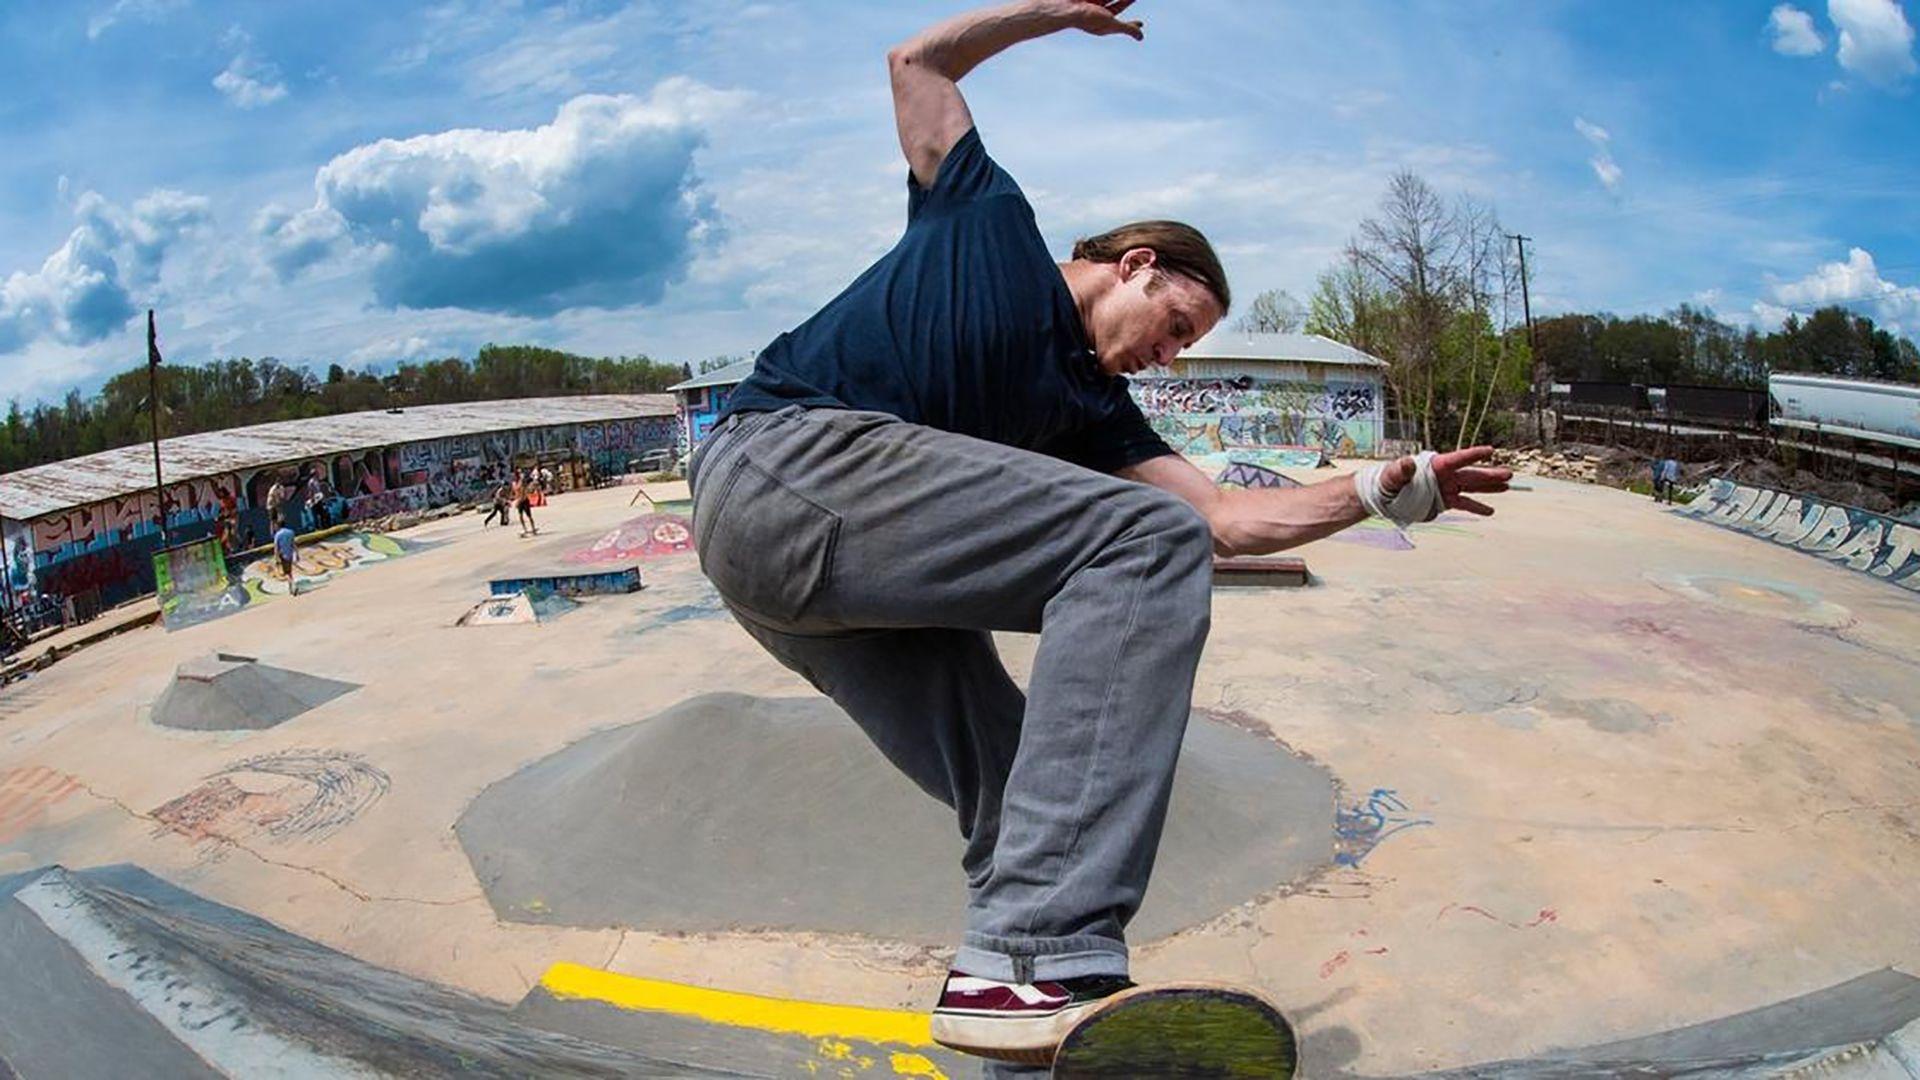 Foundation Skatepark in Asheville